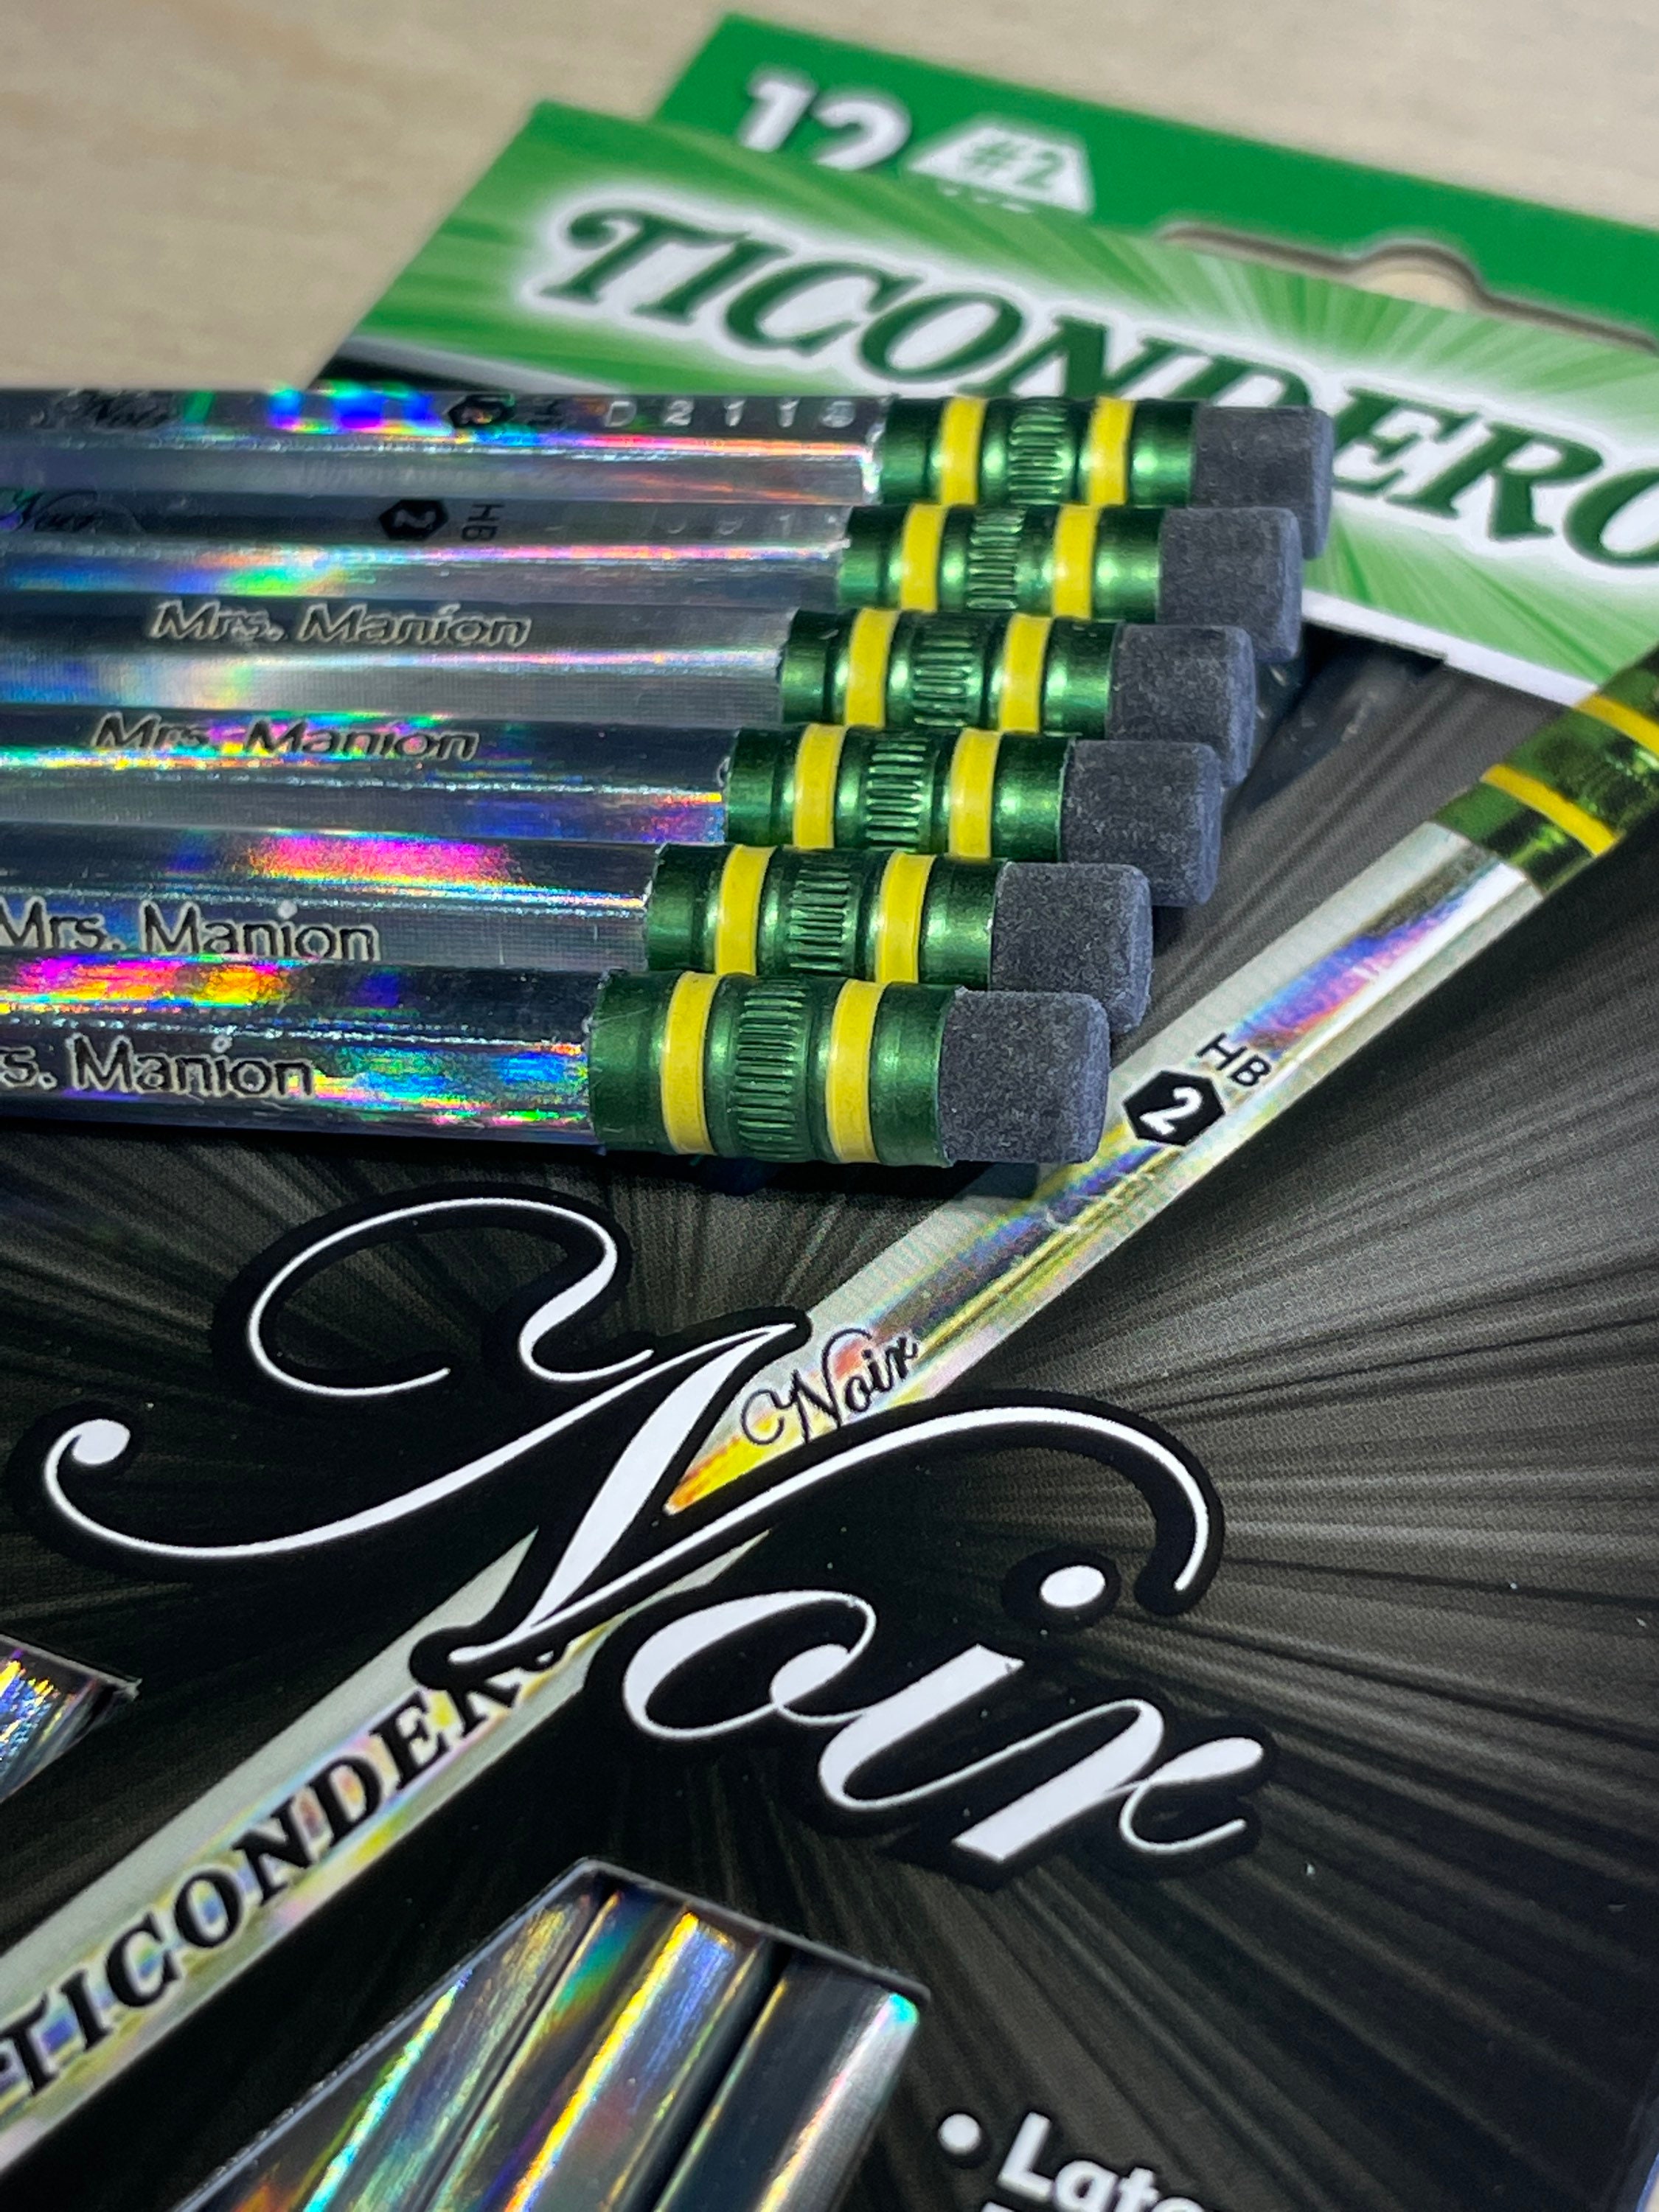 Ticonderoga® Large No.2 Pencils with Eraser Pencils Crayons